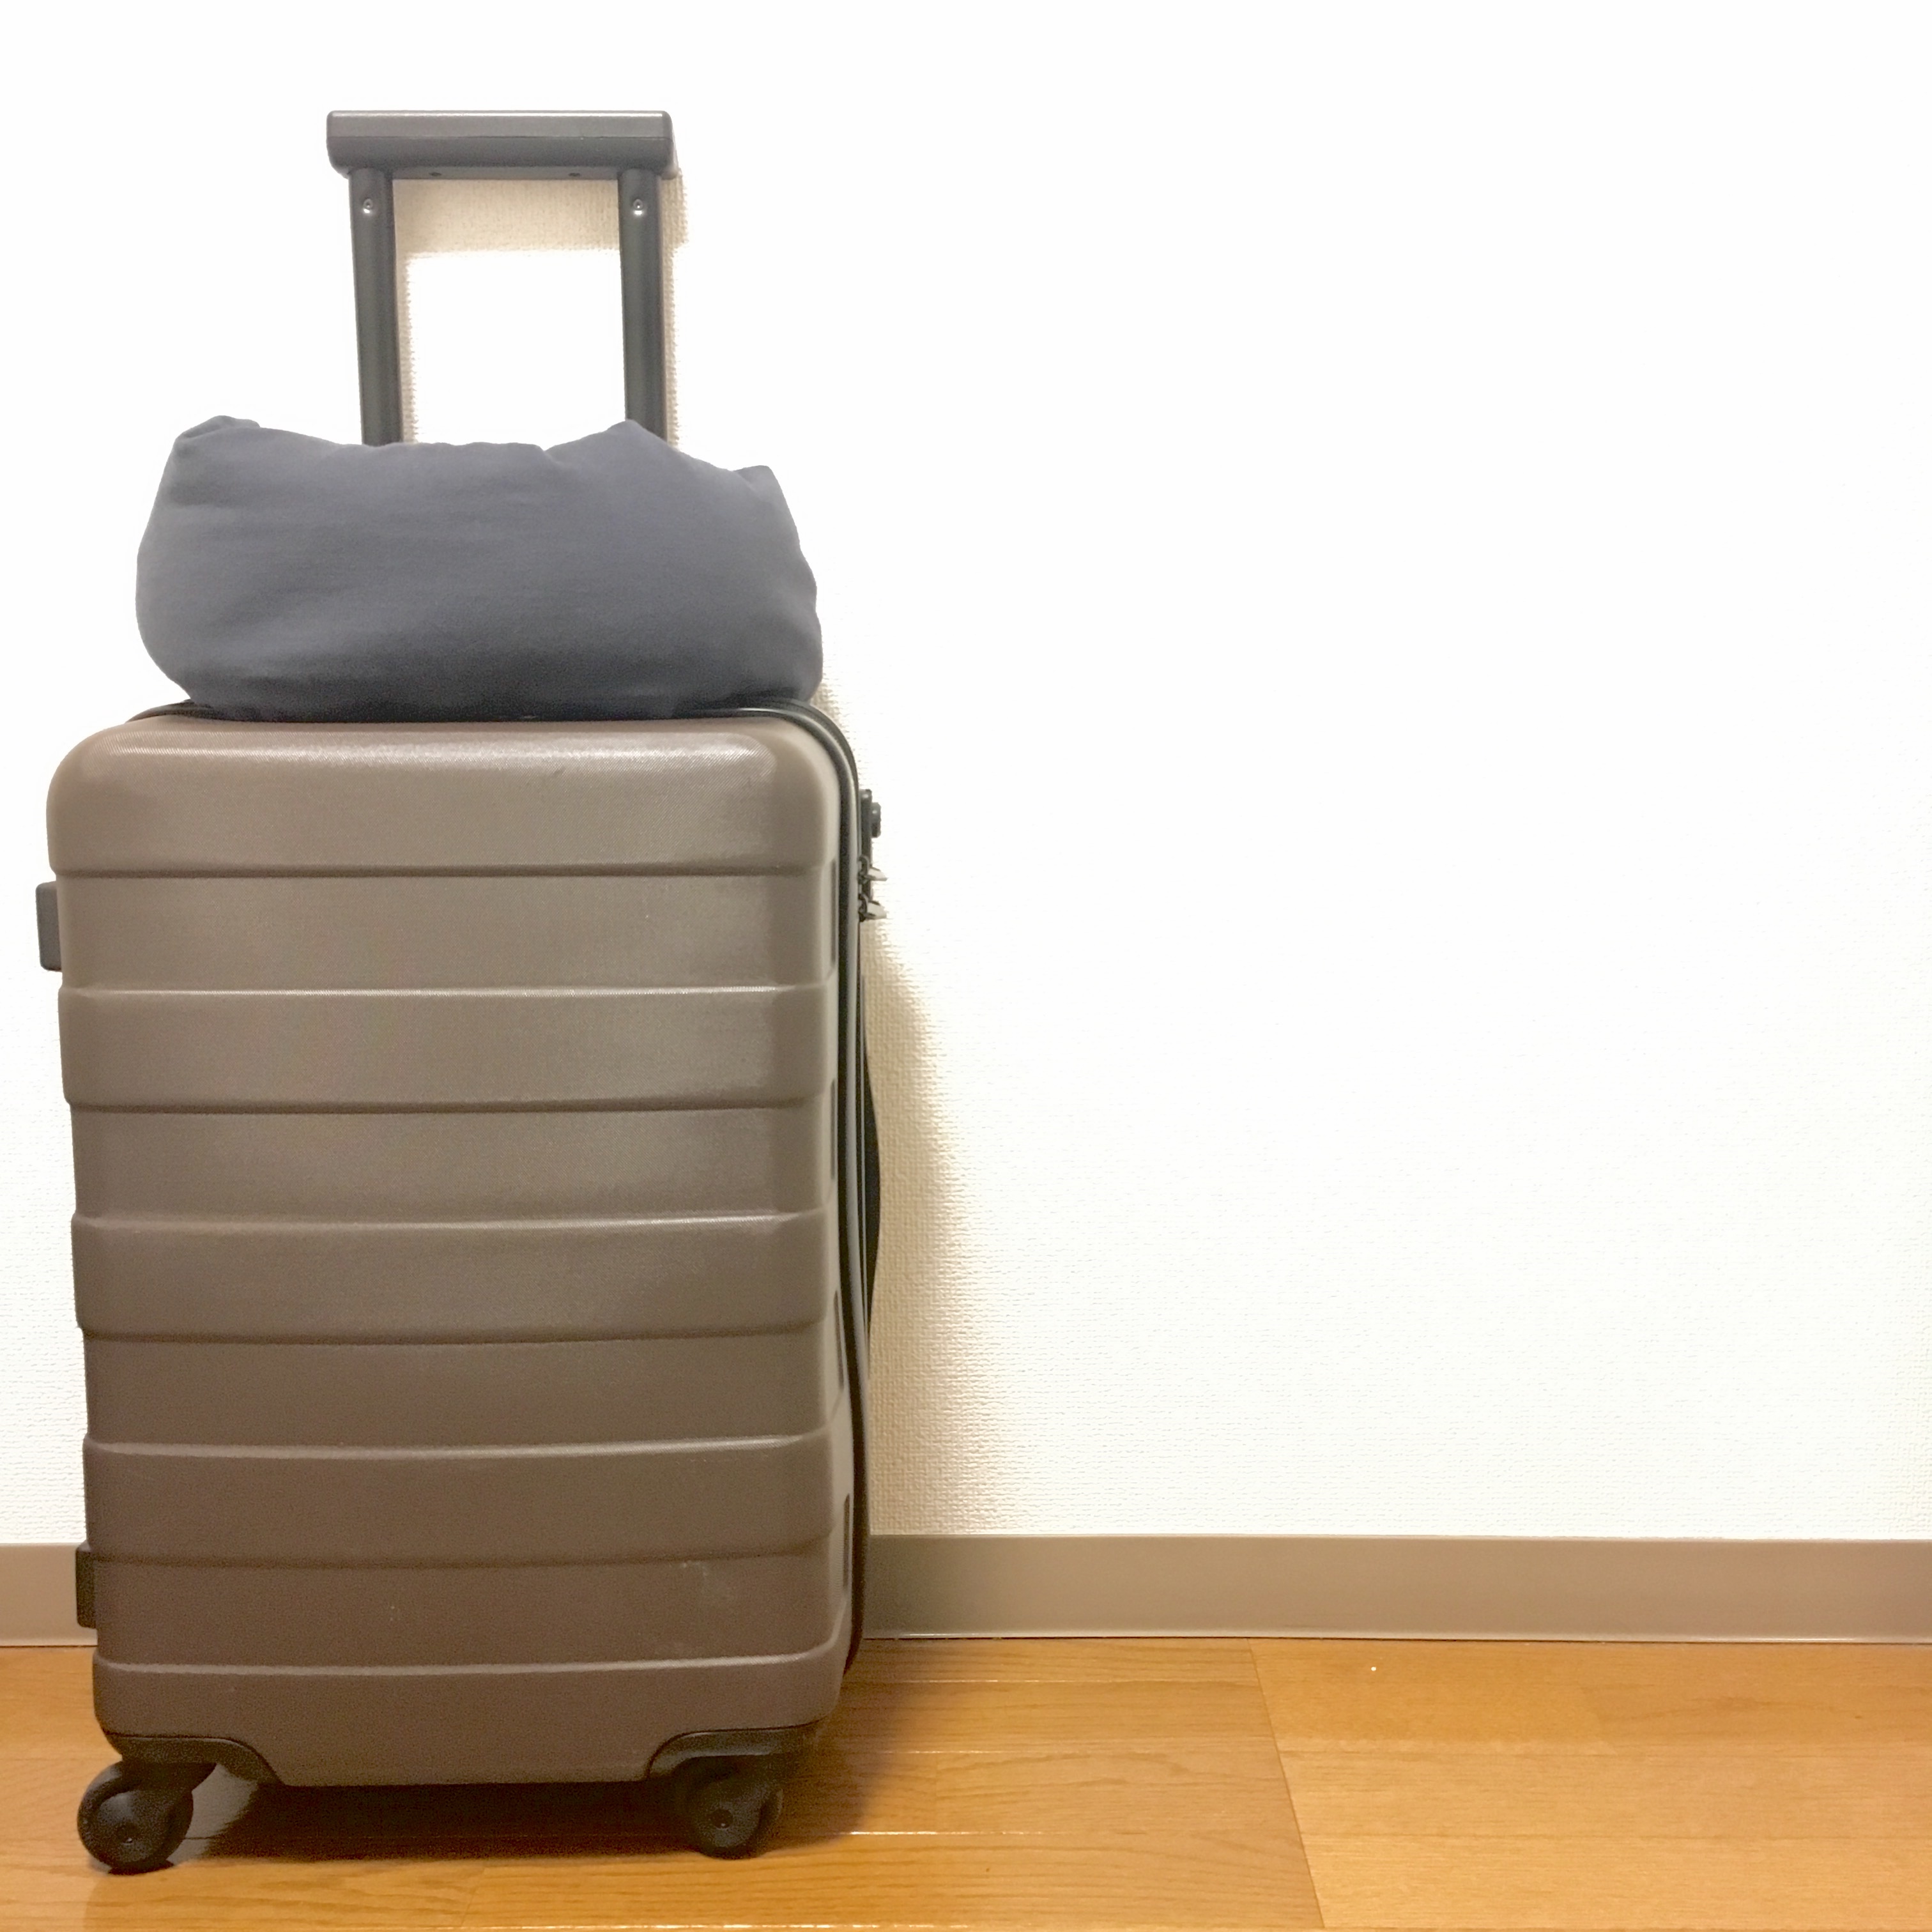 無印良品スーツケース旧型 - 旅行用品